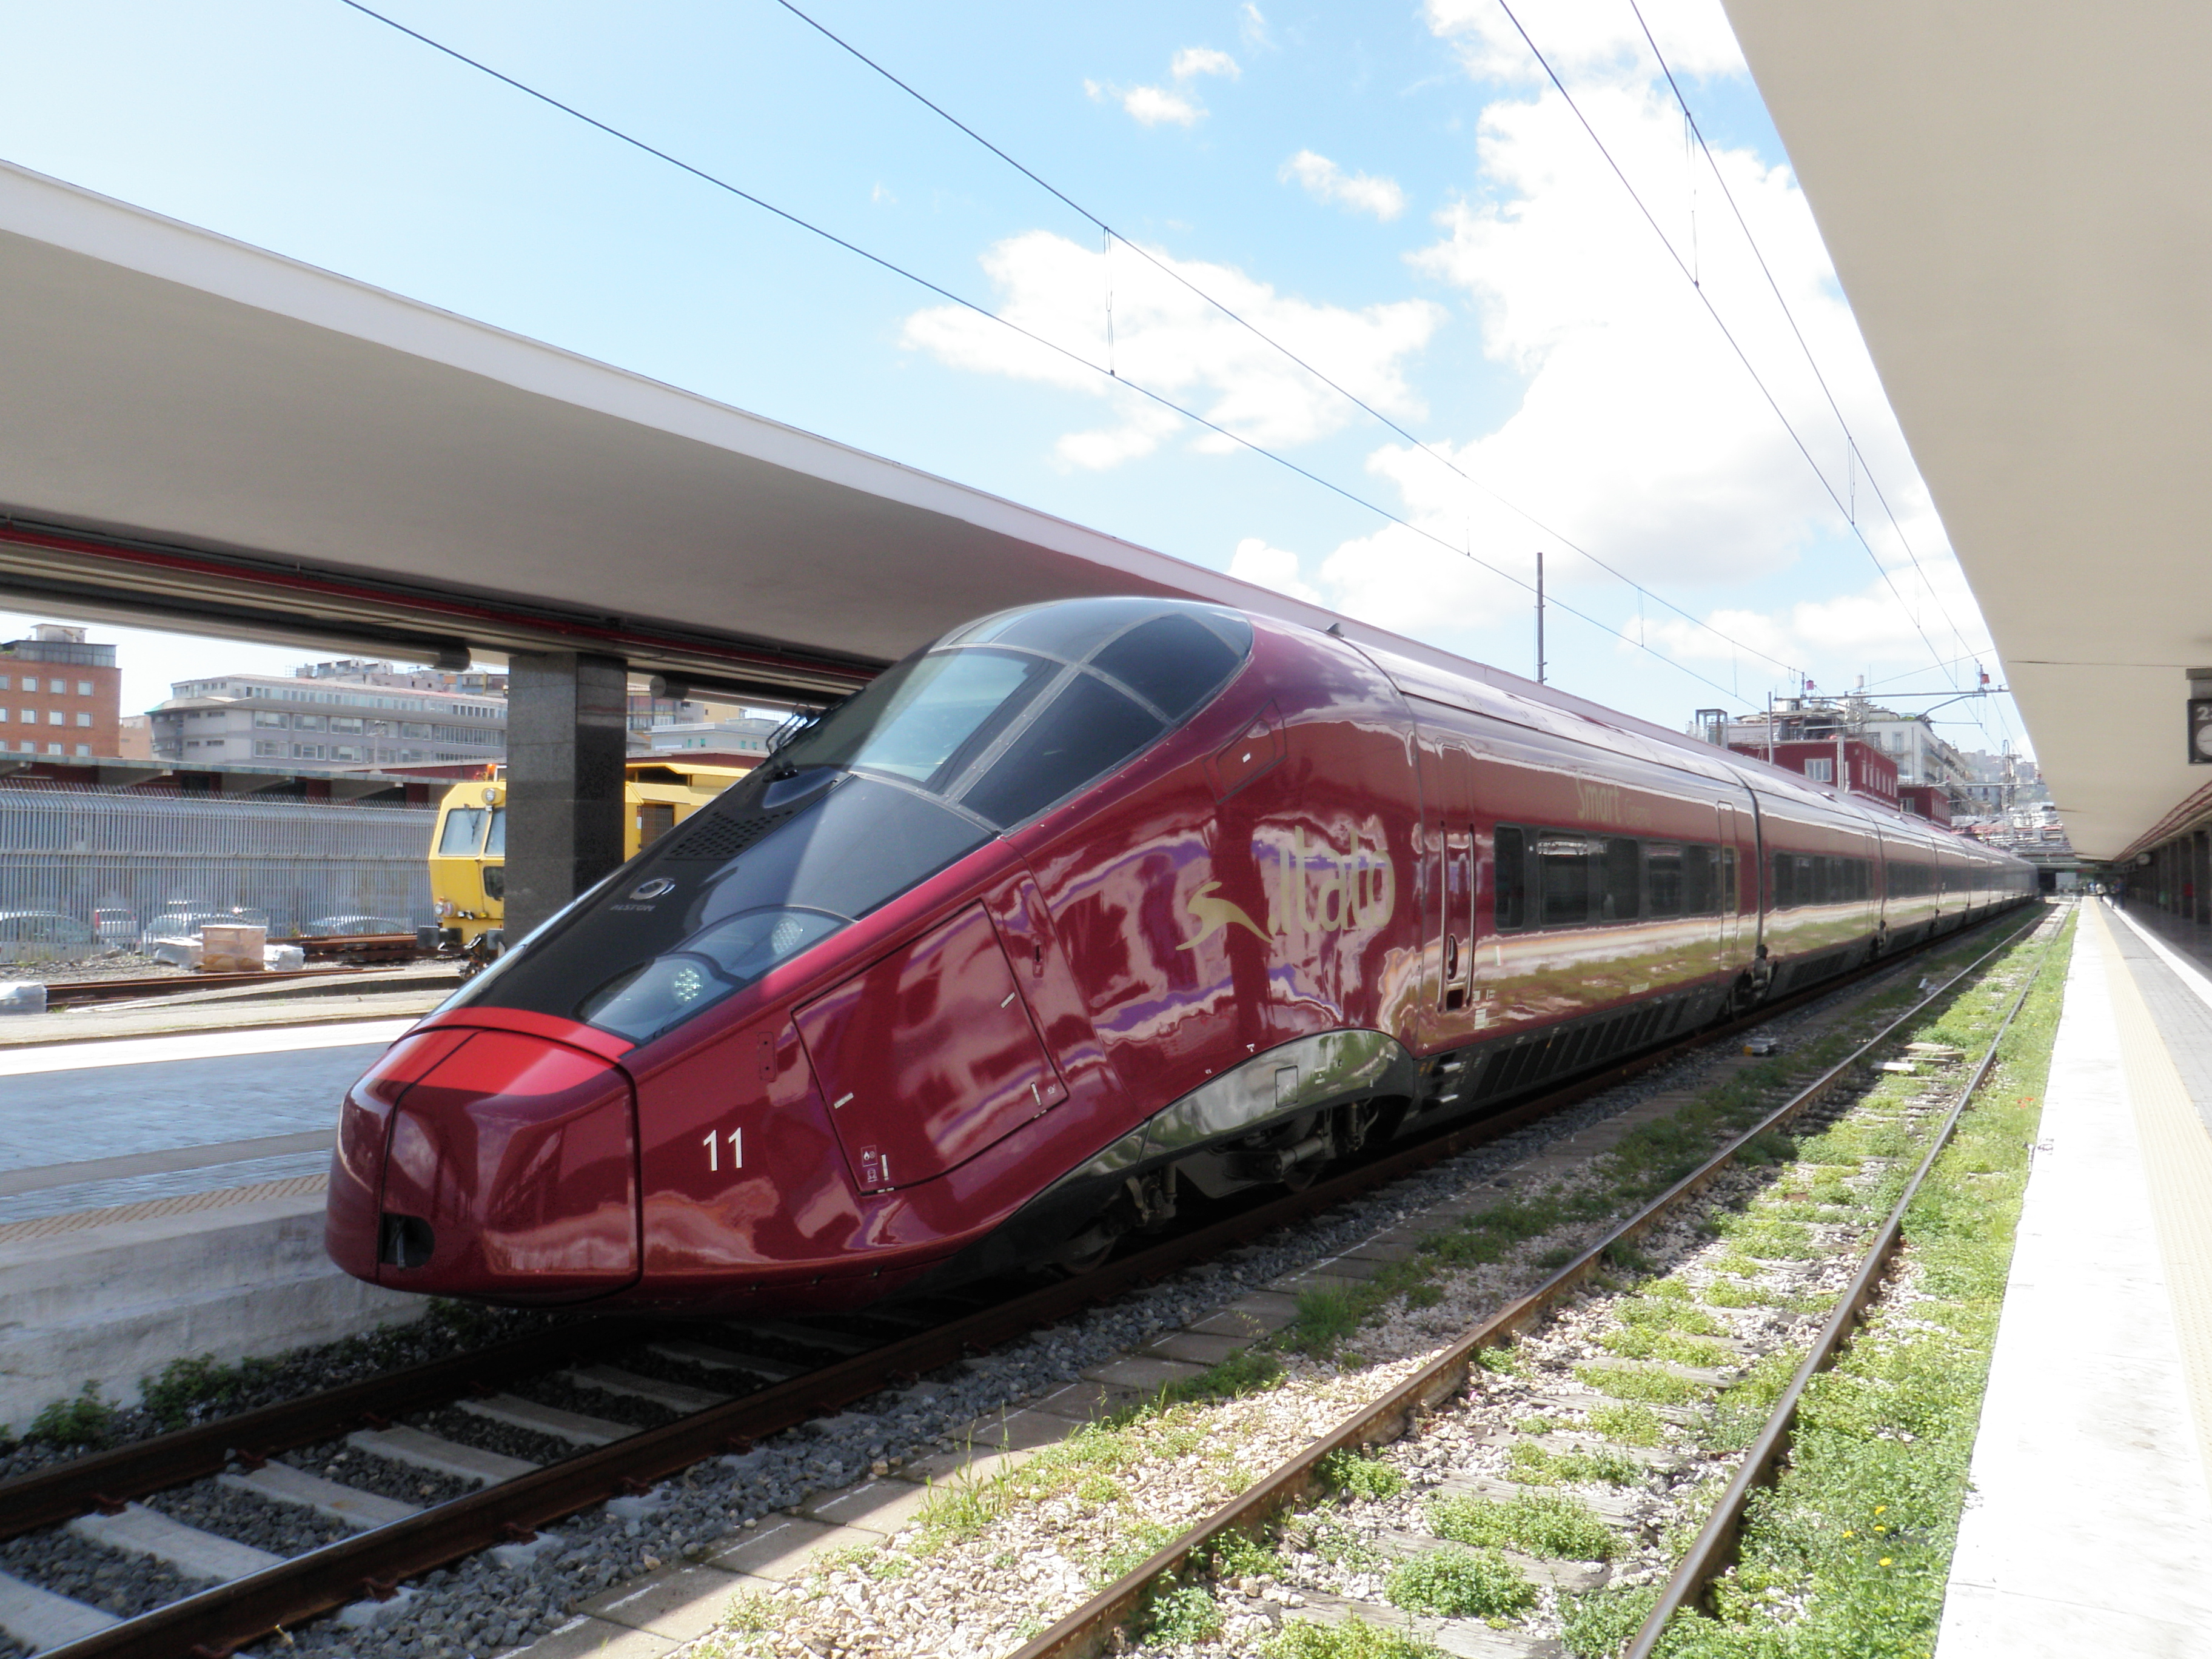 Italotreno. Скоростной поезд Италия Italo. AGV поезд. AGV поезд скоростной. Italian AGV Italo.